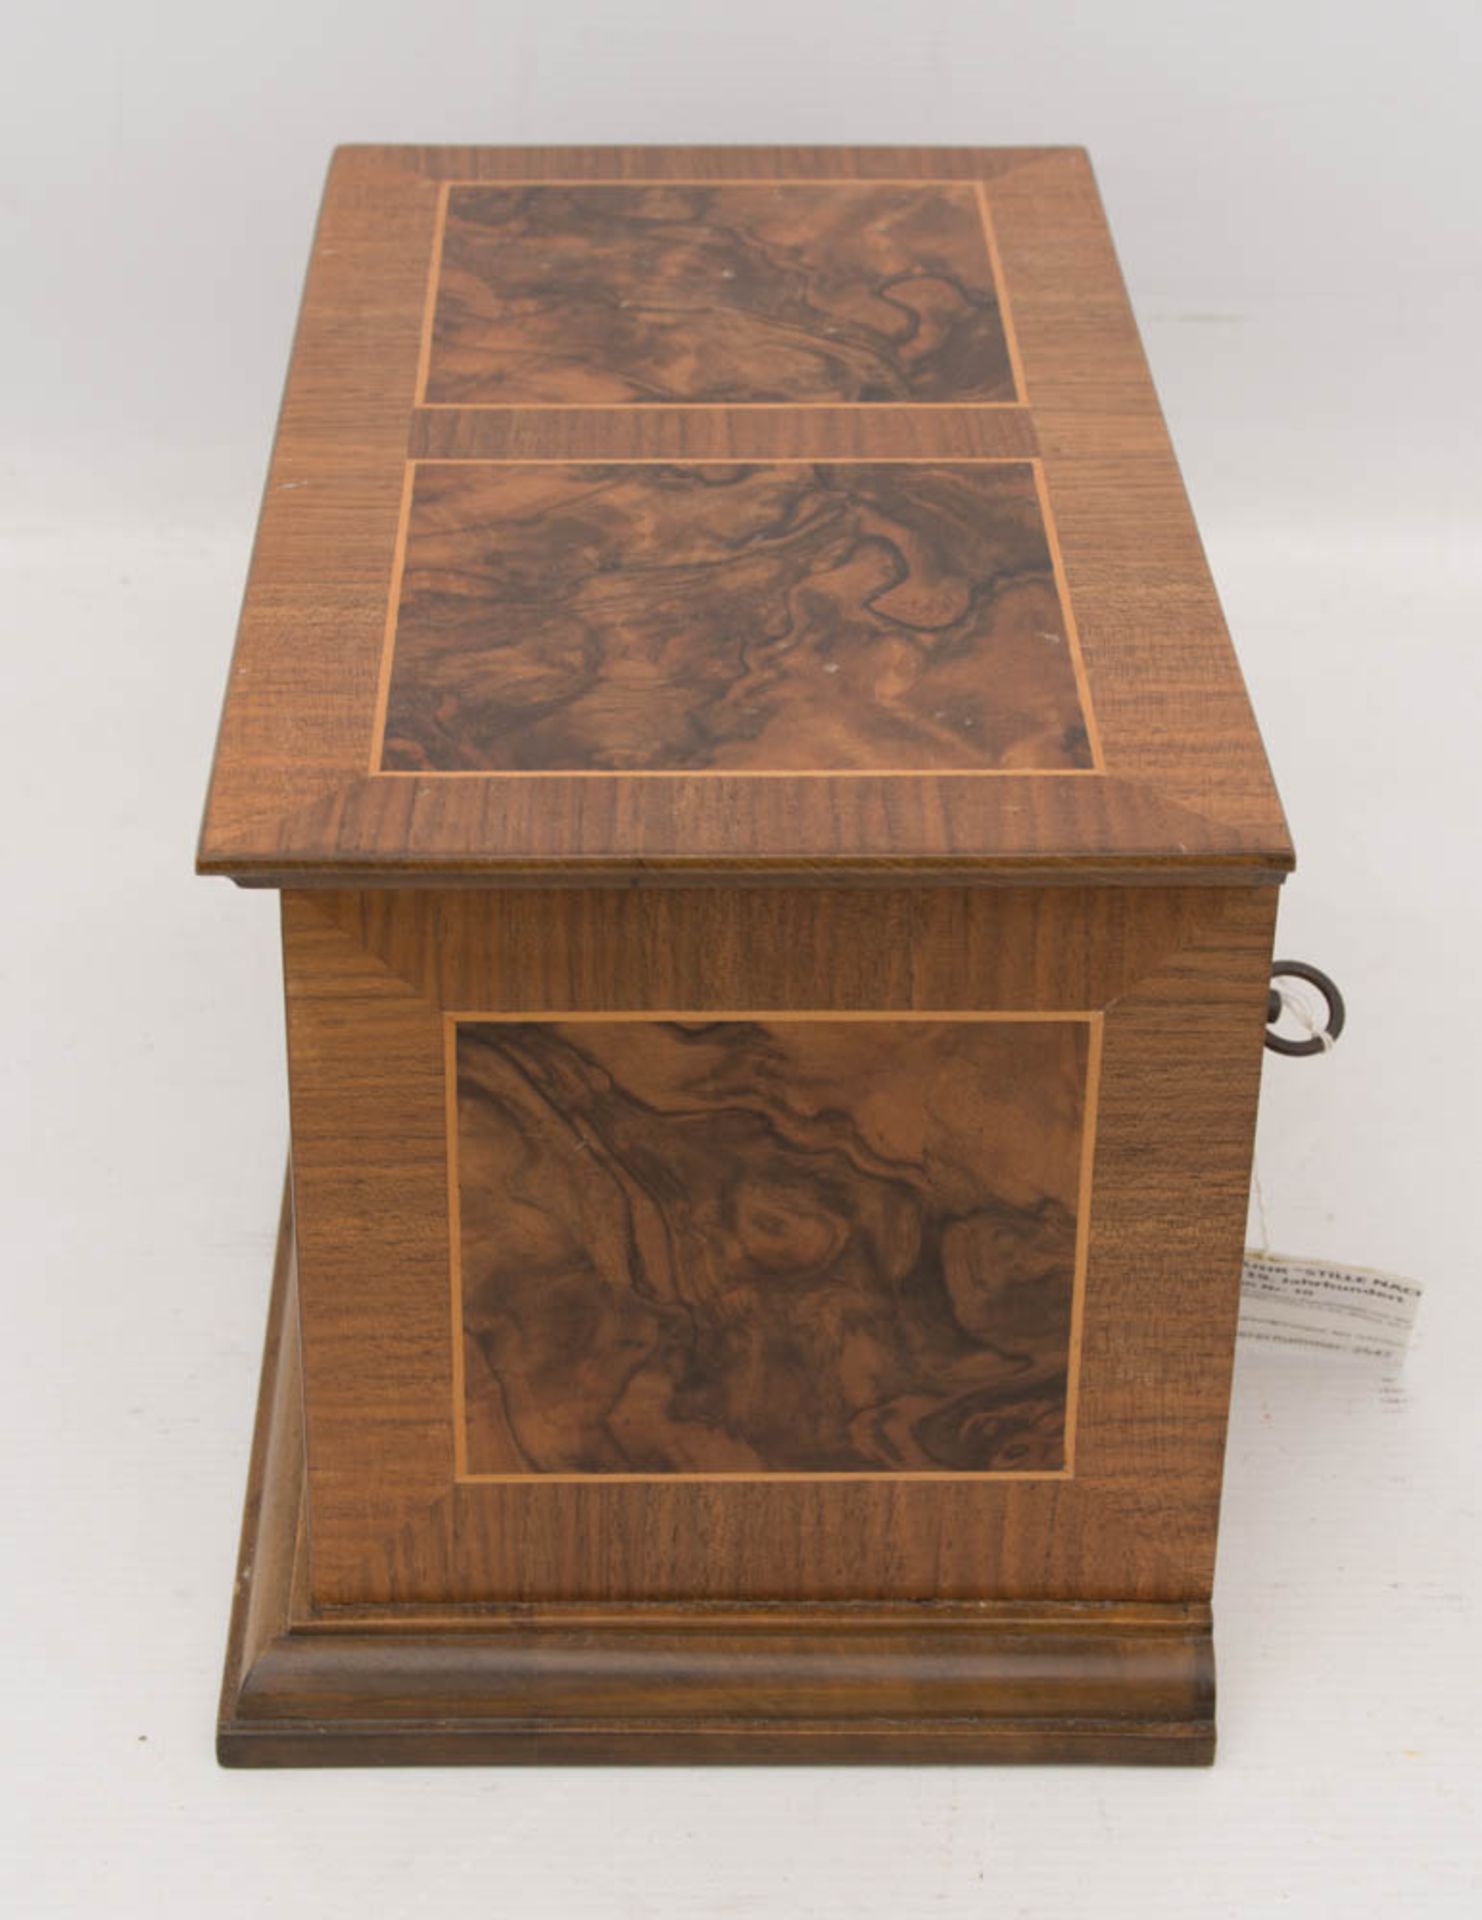 SPIELUHR "STILLE NACHT", Holz furniert, 2. Hälfte 19. JahrhundertPolyphone Spieluhr/Spielkasten - Bild 2 aus 4